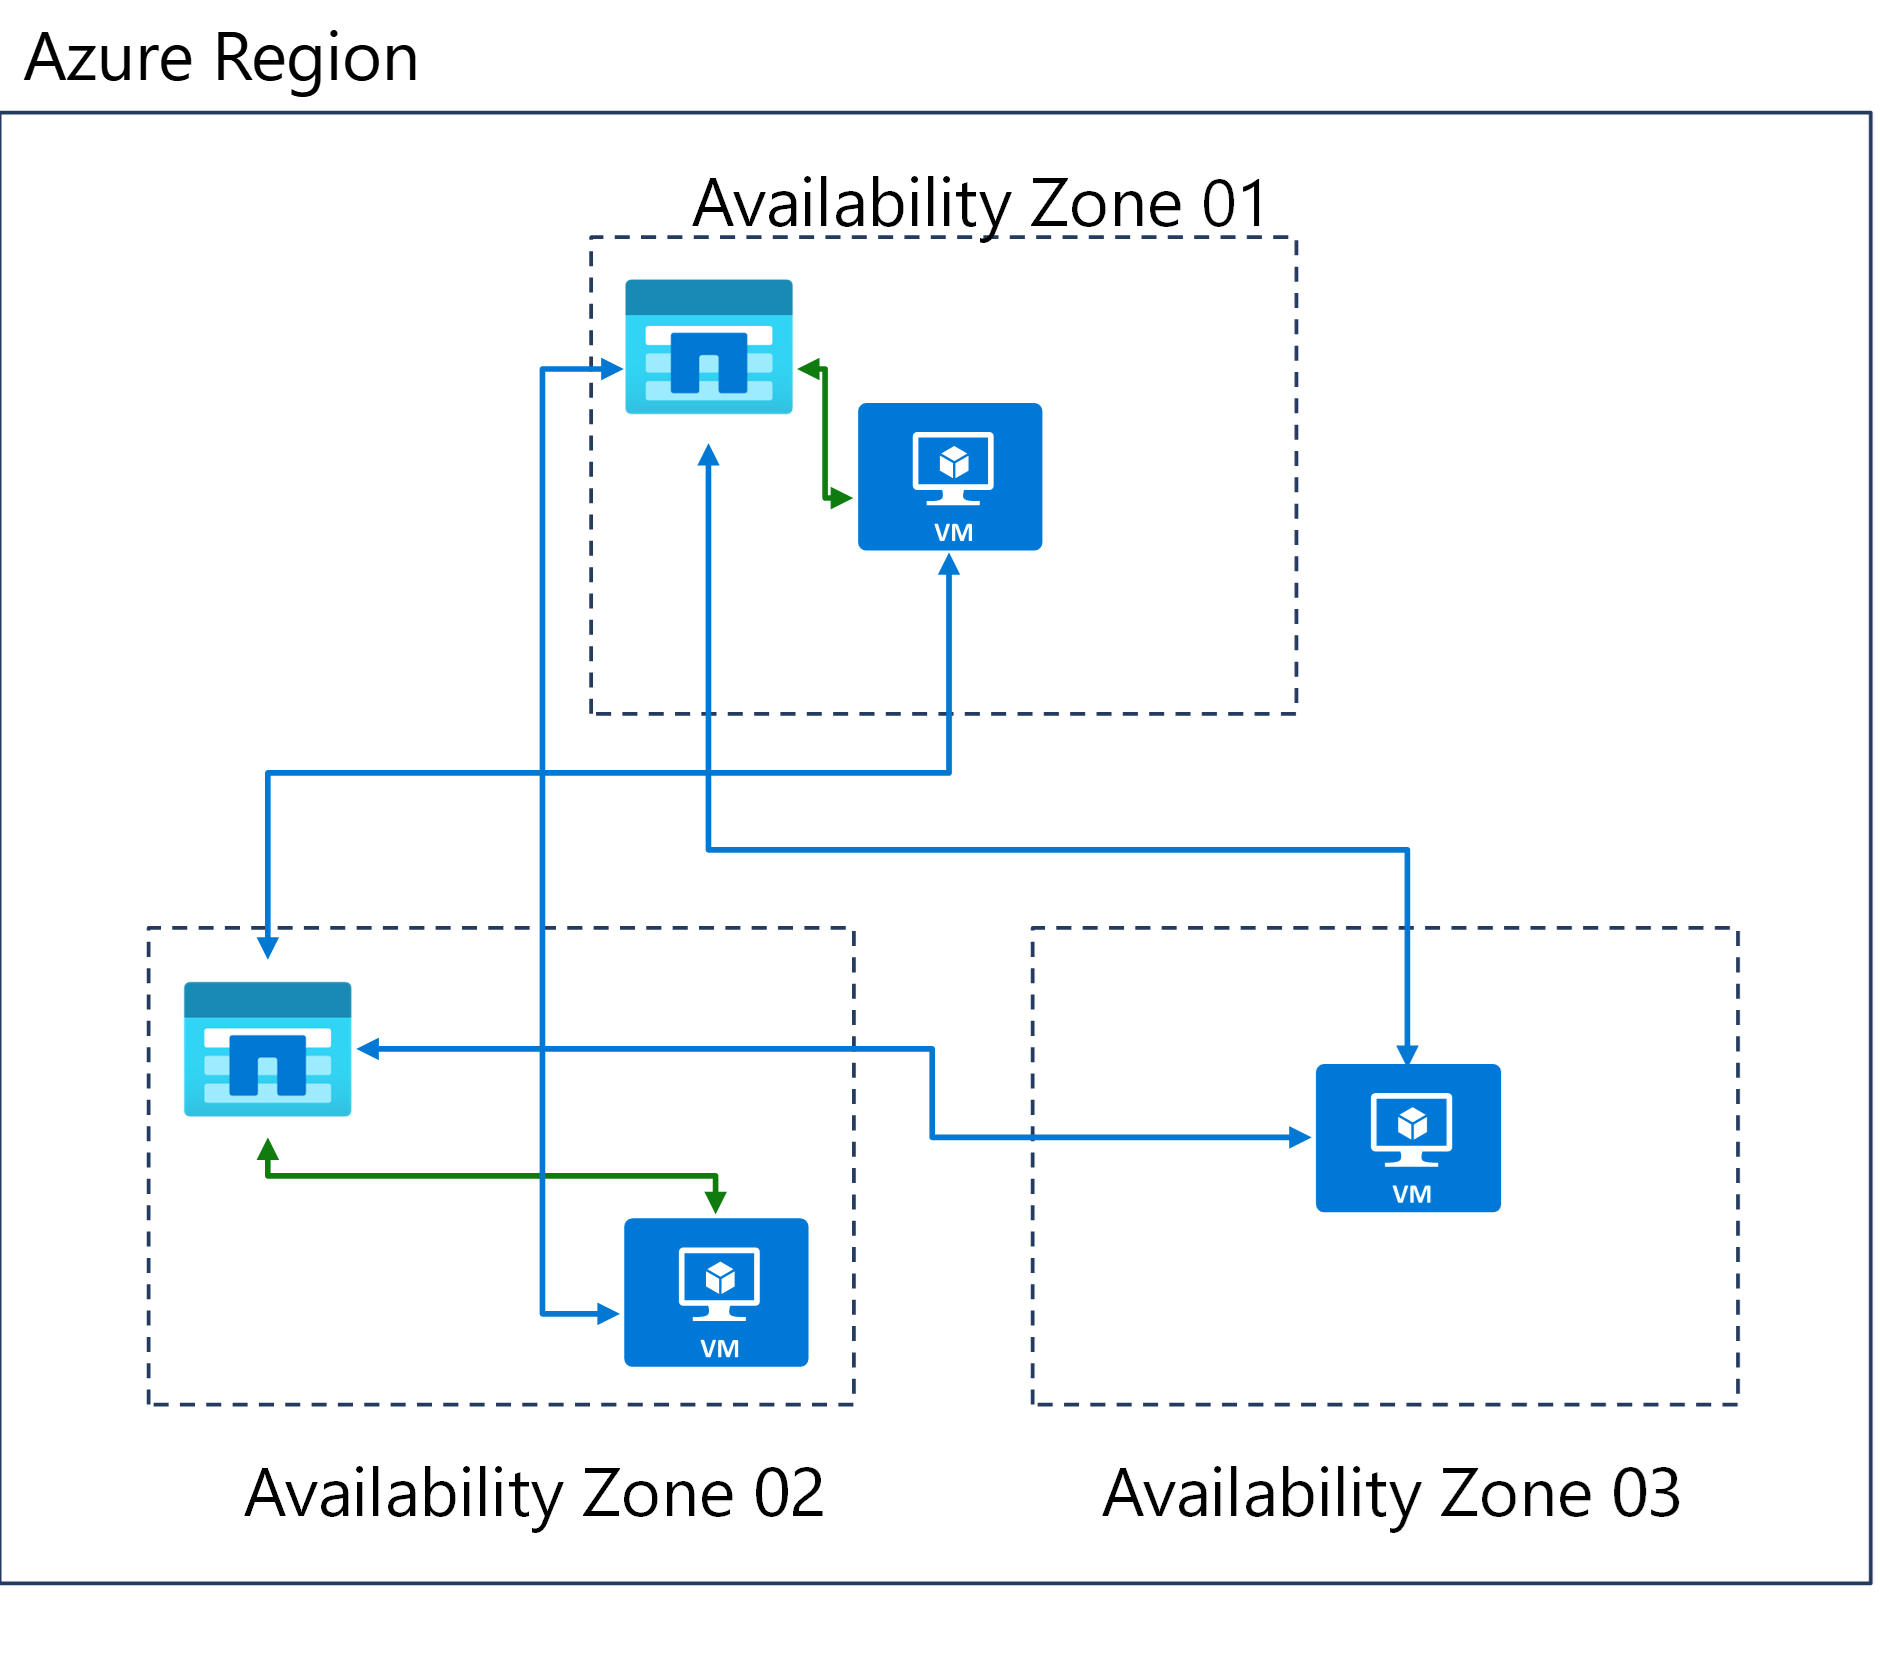 Diagramma di tre zone di disponibilità in un'area di Azure.